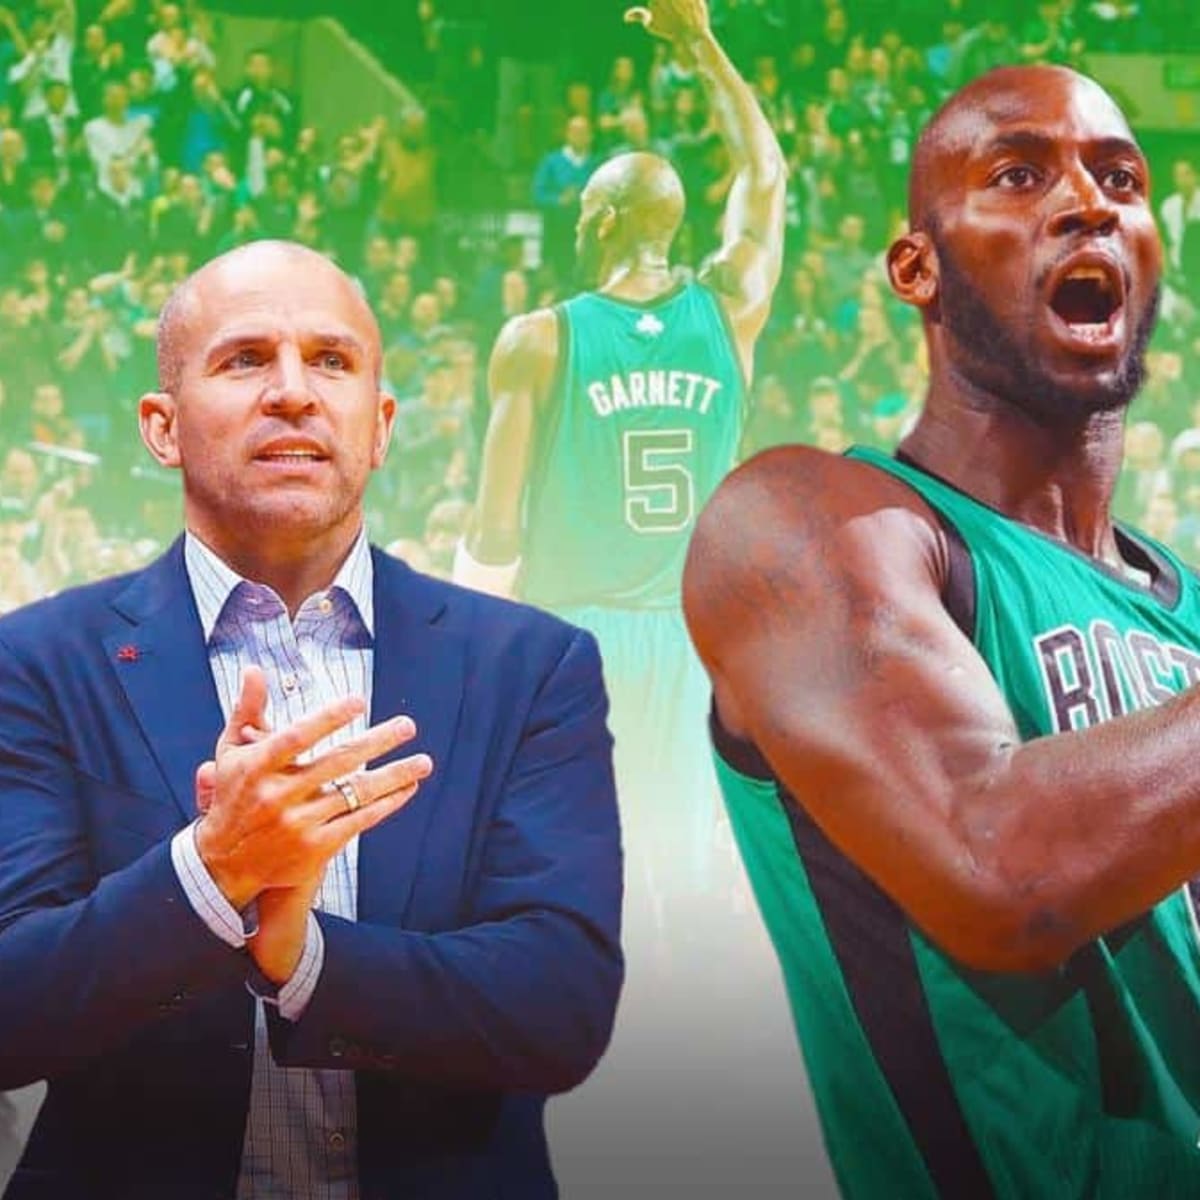 Garnett has jersey retired following Celtics tight loss to red-hot Mavs, Sports